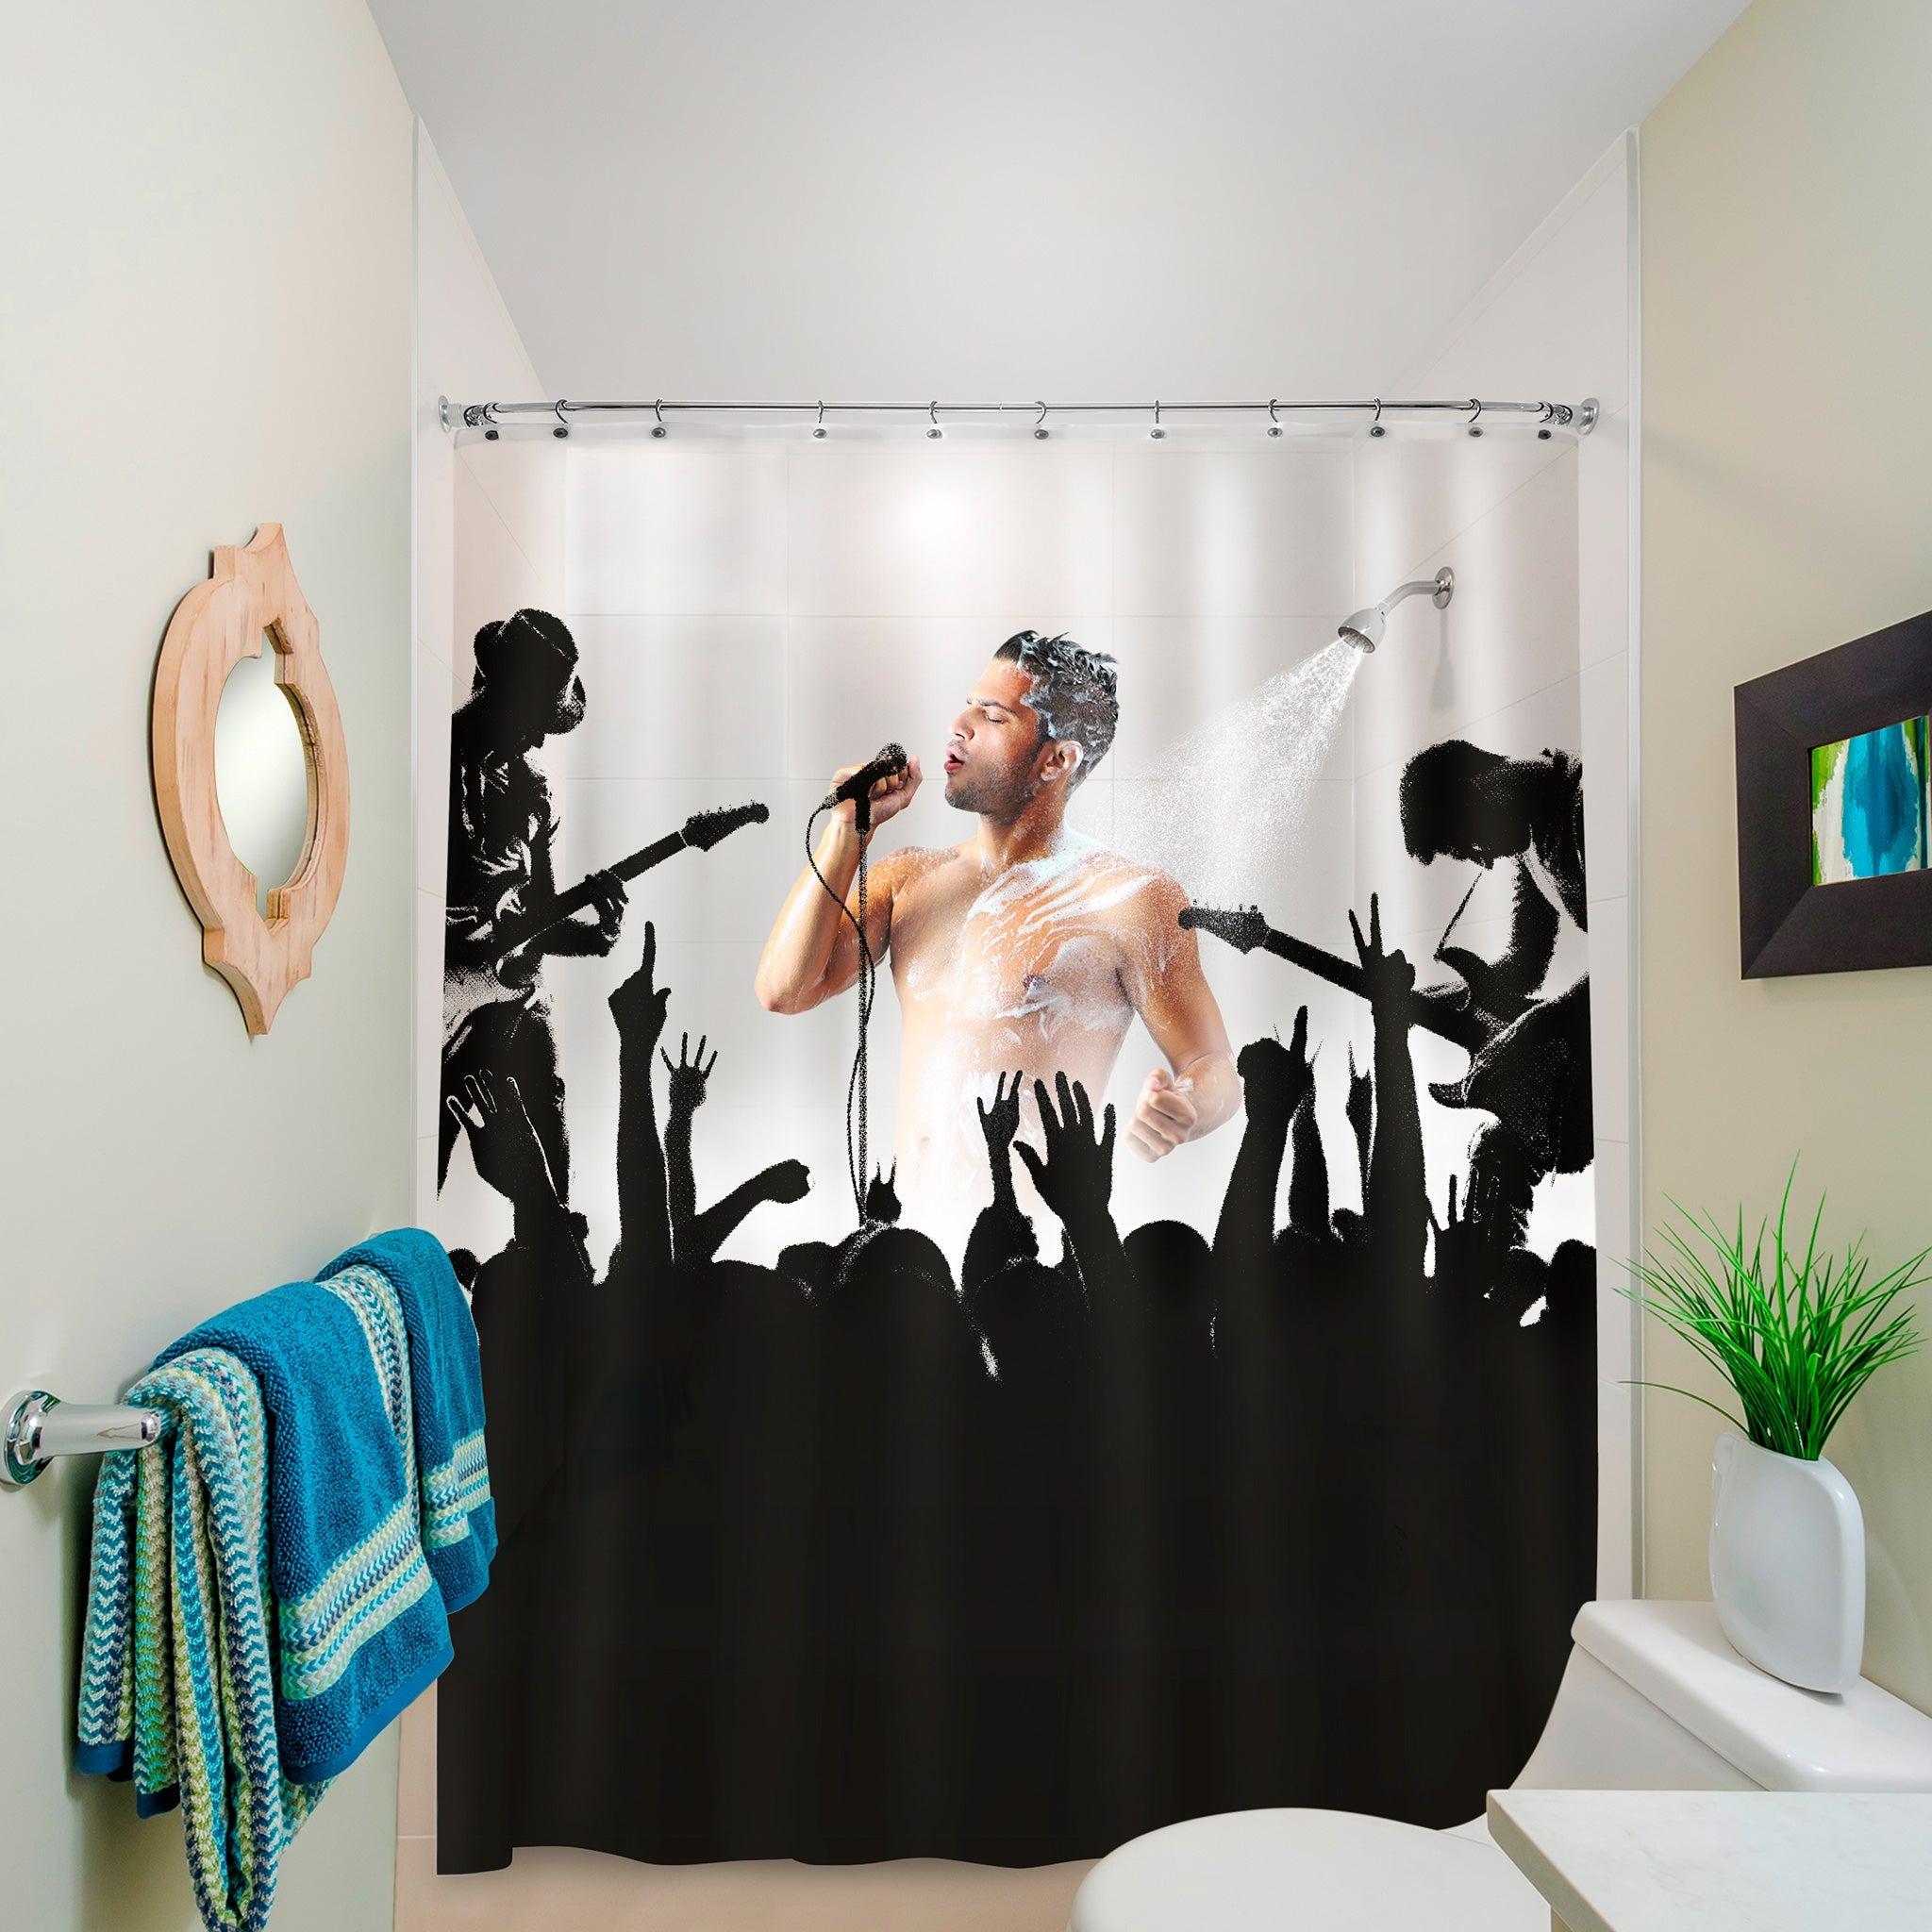 The Rockstar Shower Curtain